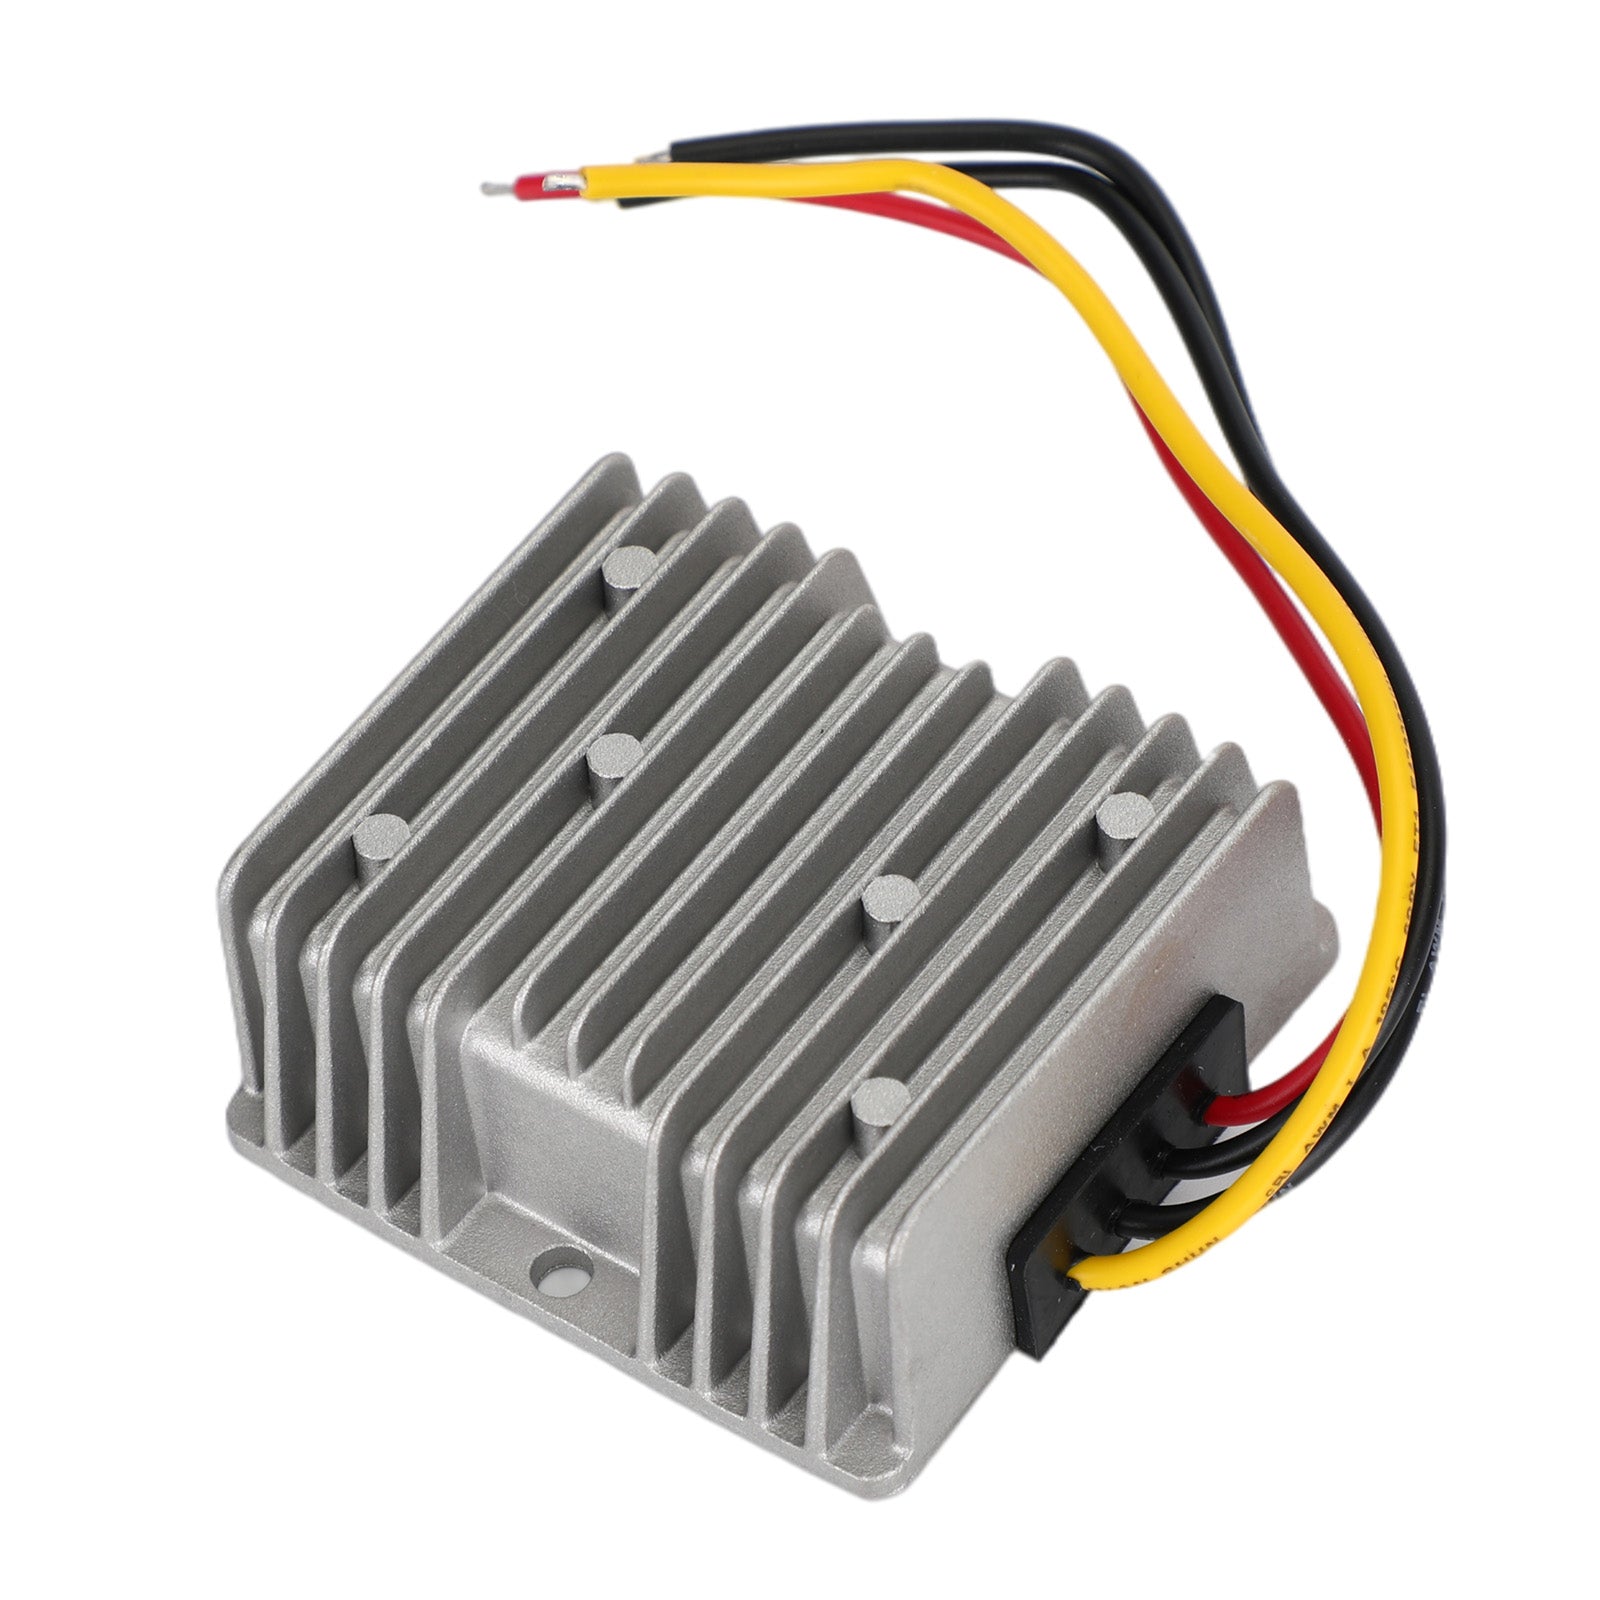 Regulador convertidor de potencia CC/CC reductor impermeable de 60 V a 24 V 5 A